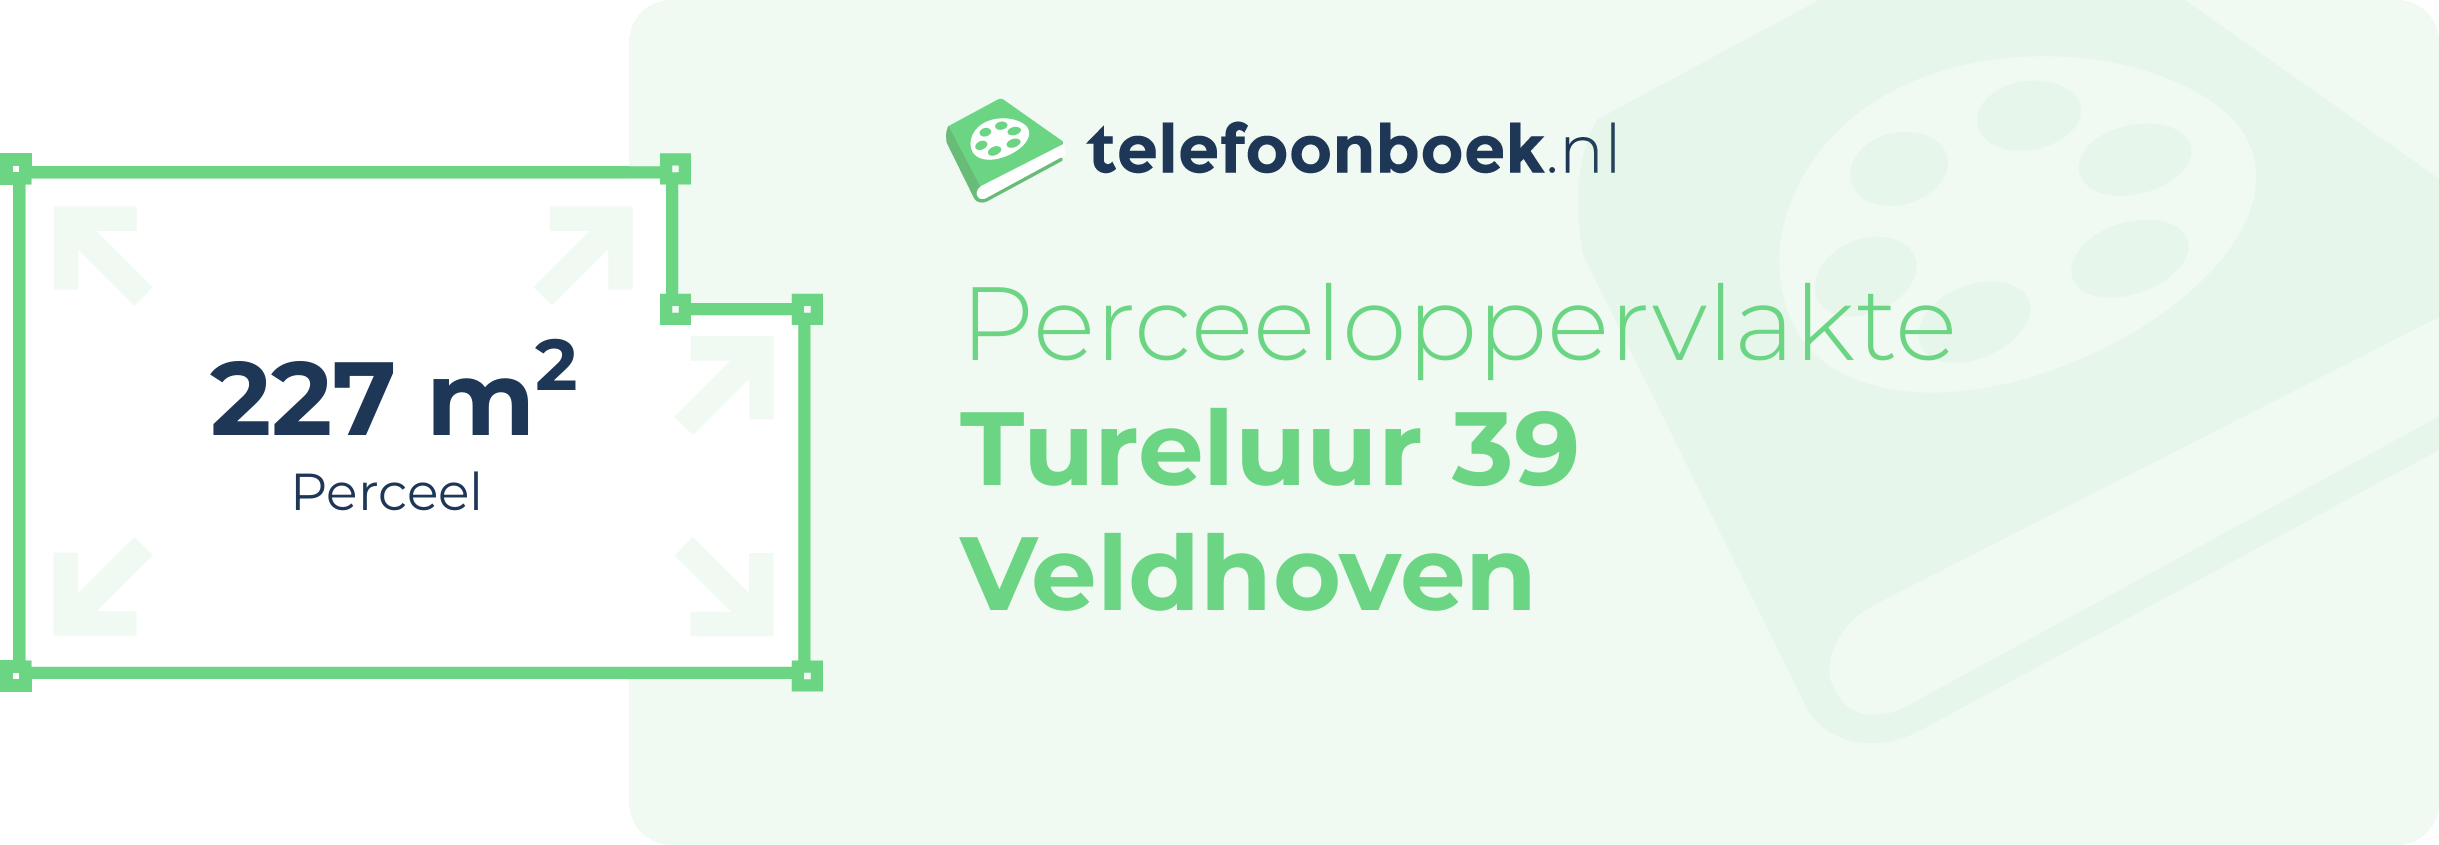 Perceeloppervlakte Tureluur 39 Veldhoven